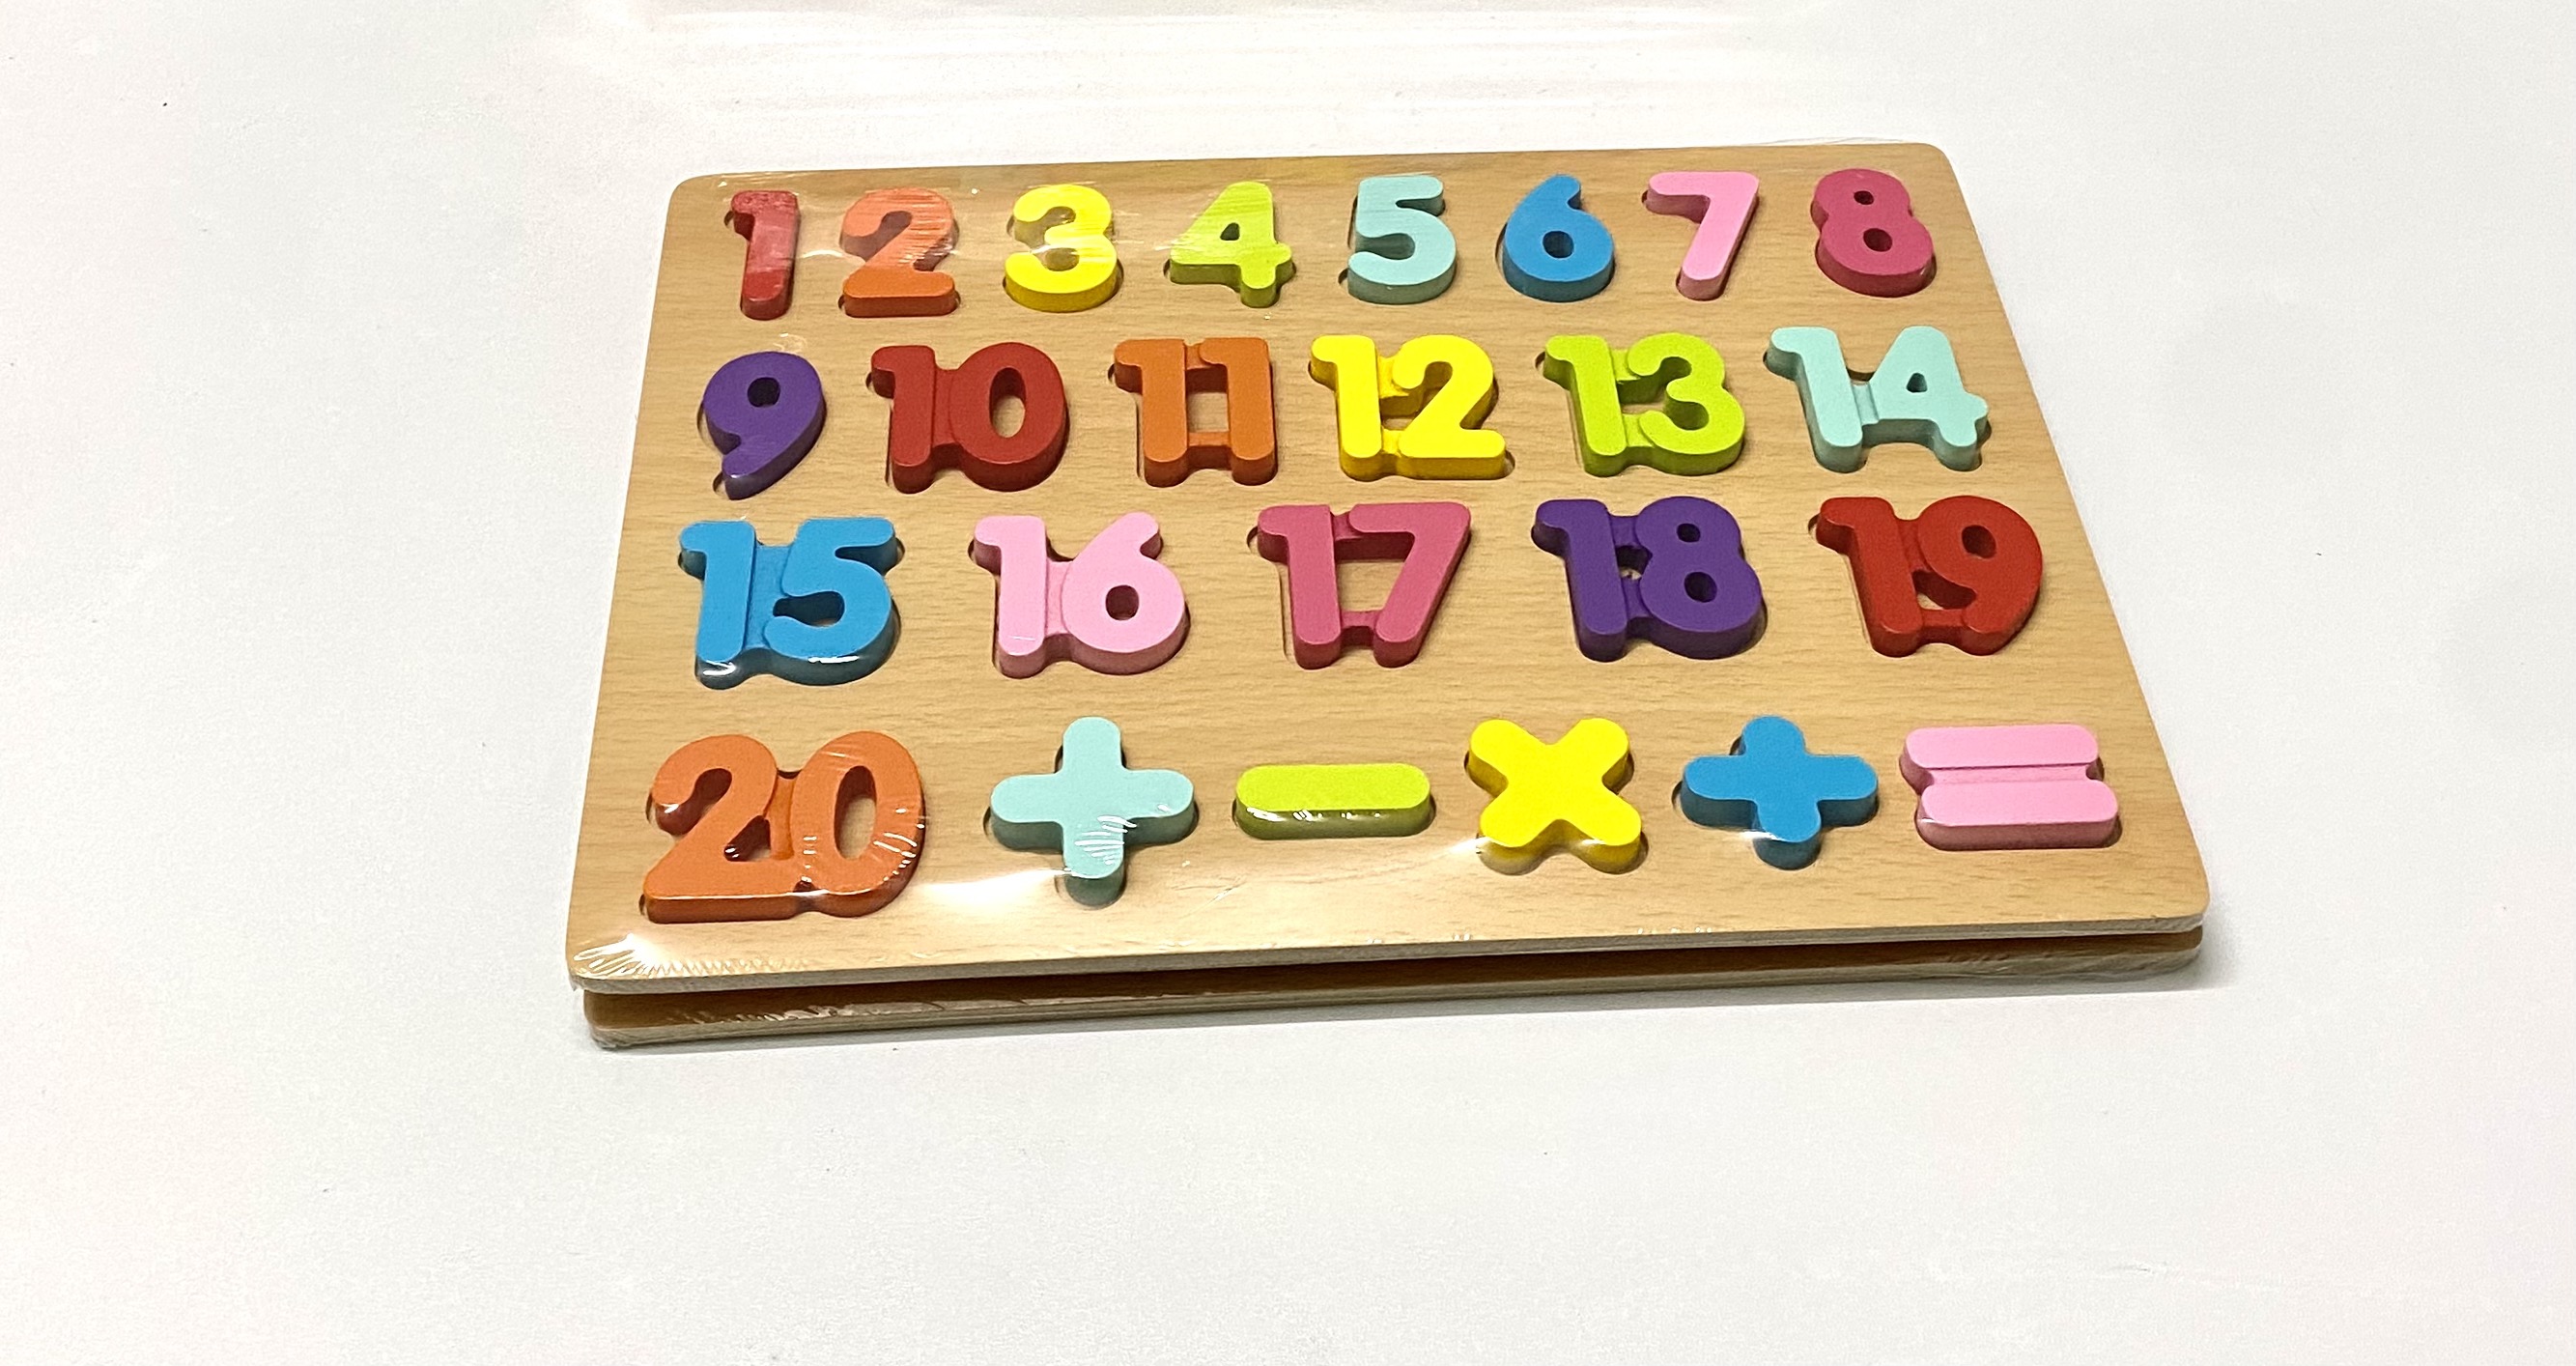 Bảng gỗ 20 số nổi thông minh, Đồ chơi cho bé nhận biết mặt số, phát triển trí tuệ